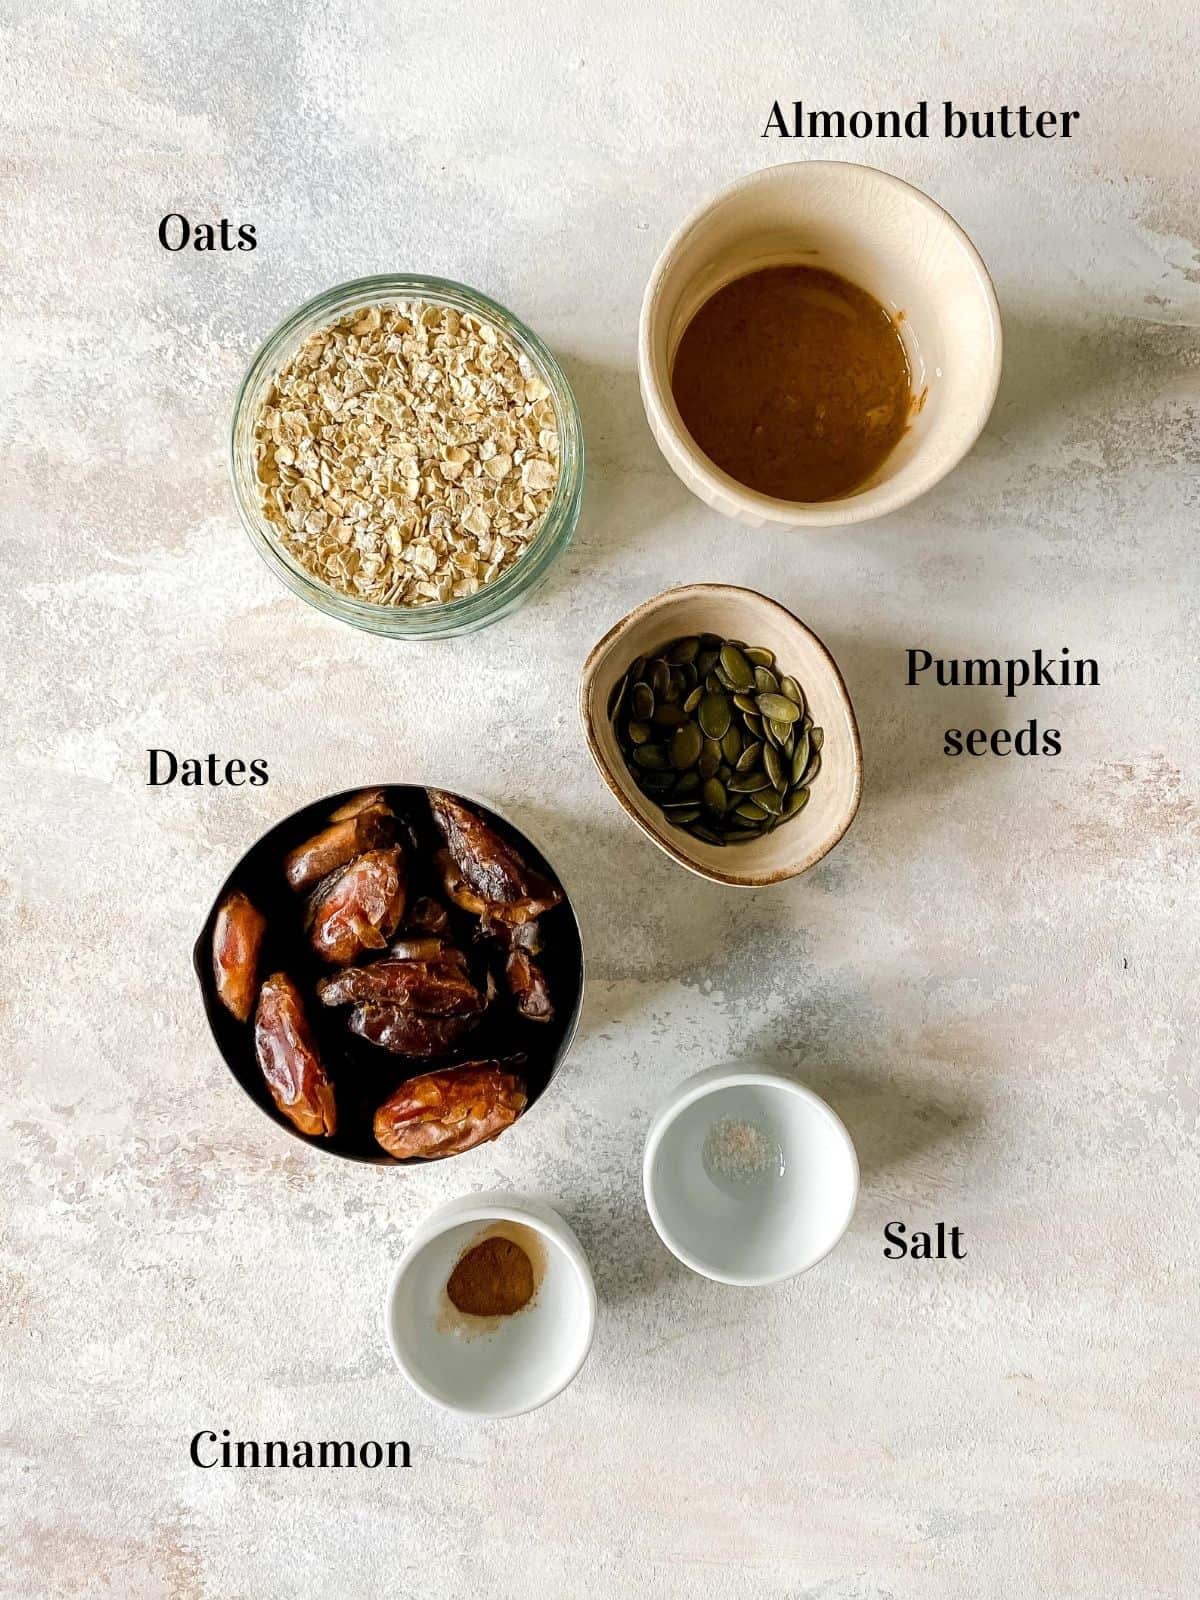 oats, almond butter, pumpkin seeds, dates, salt and cinnamon in small bowls.